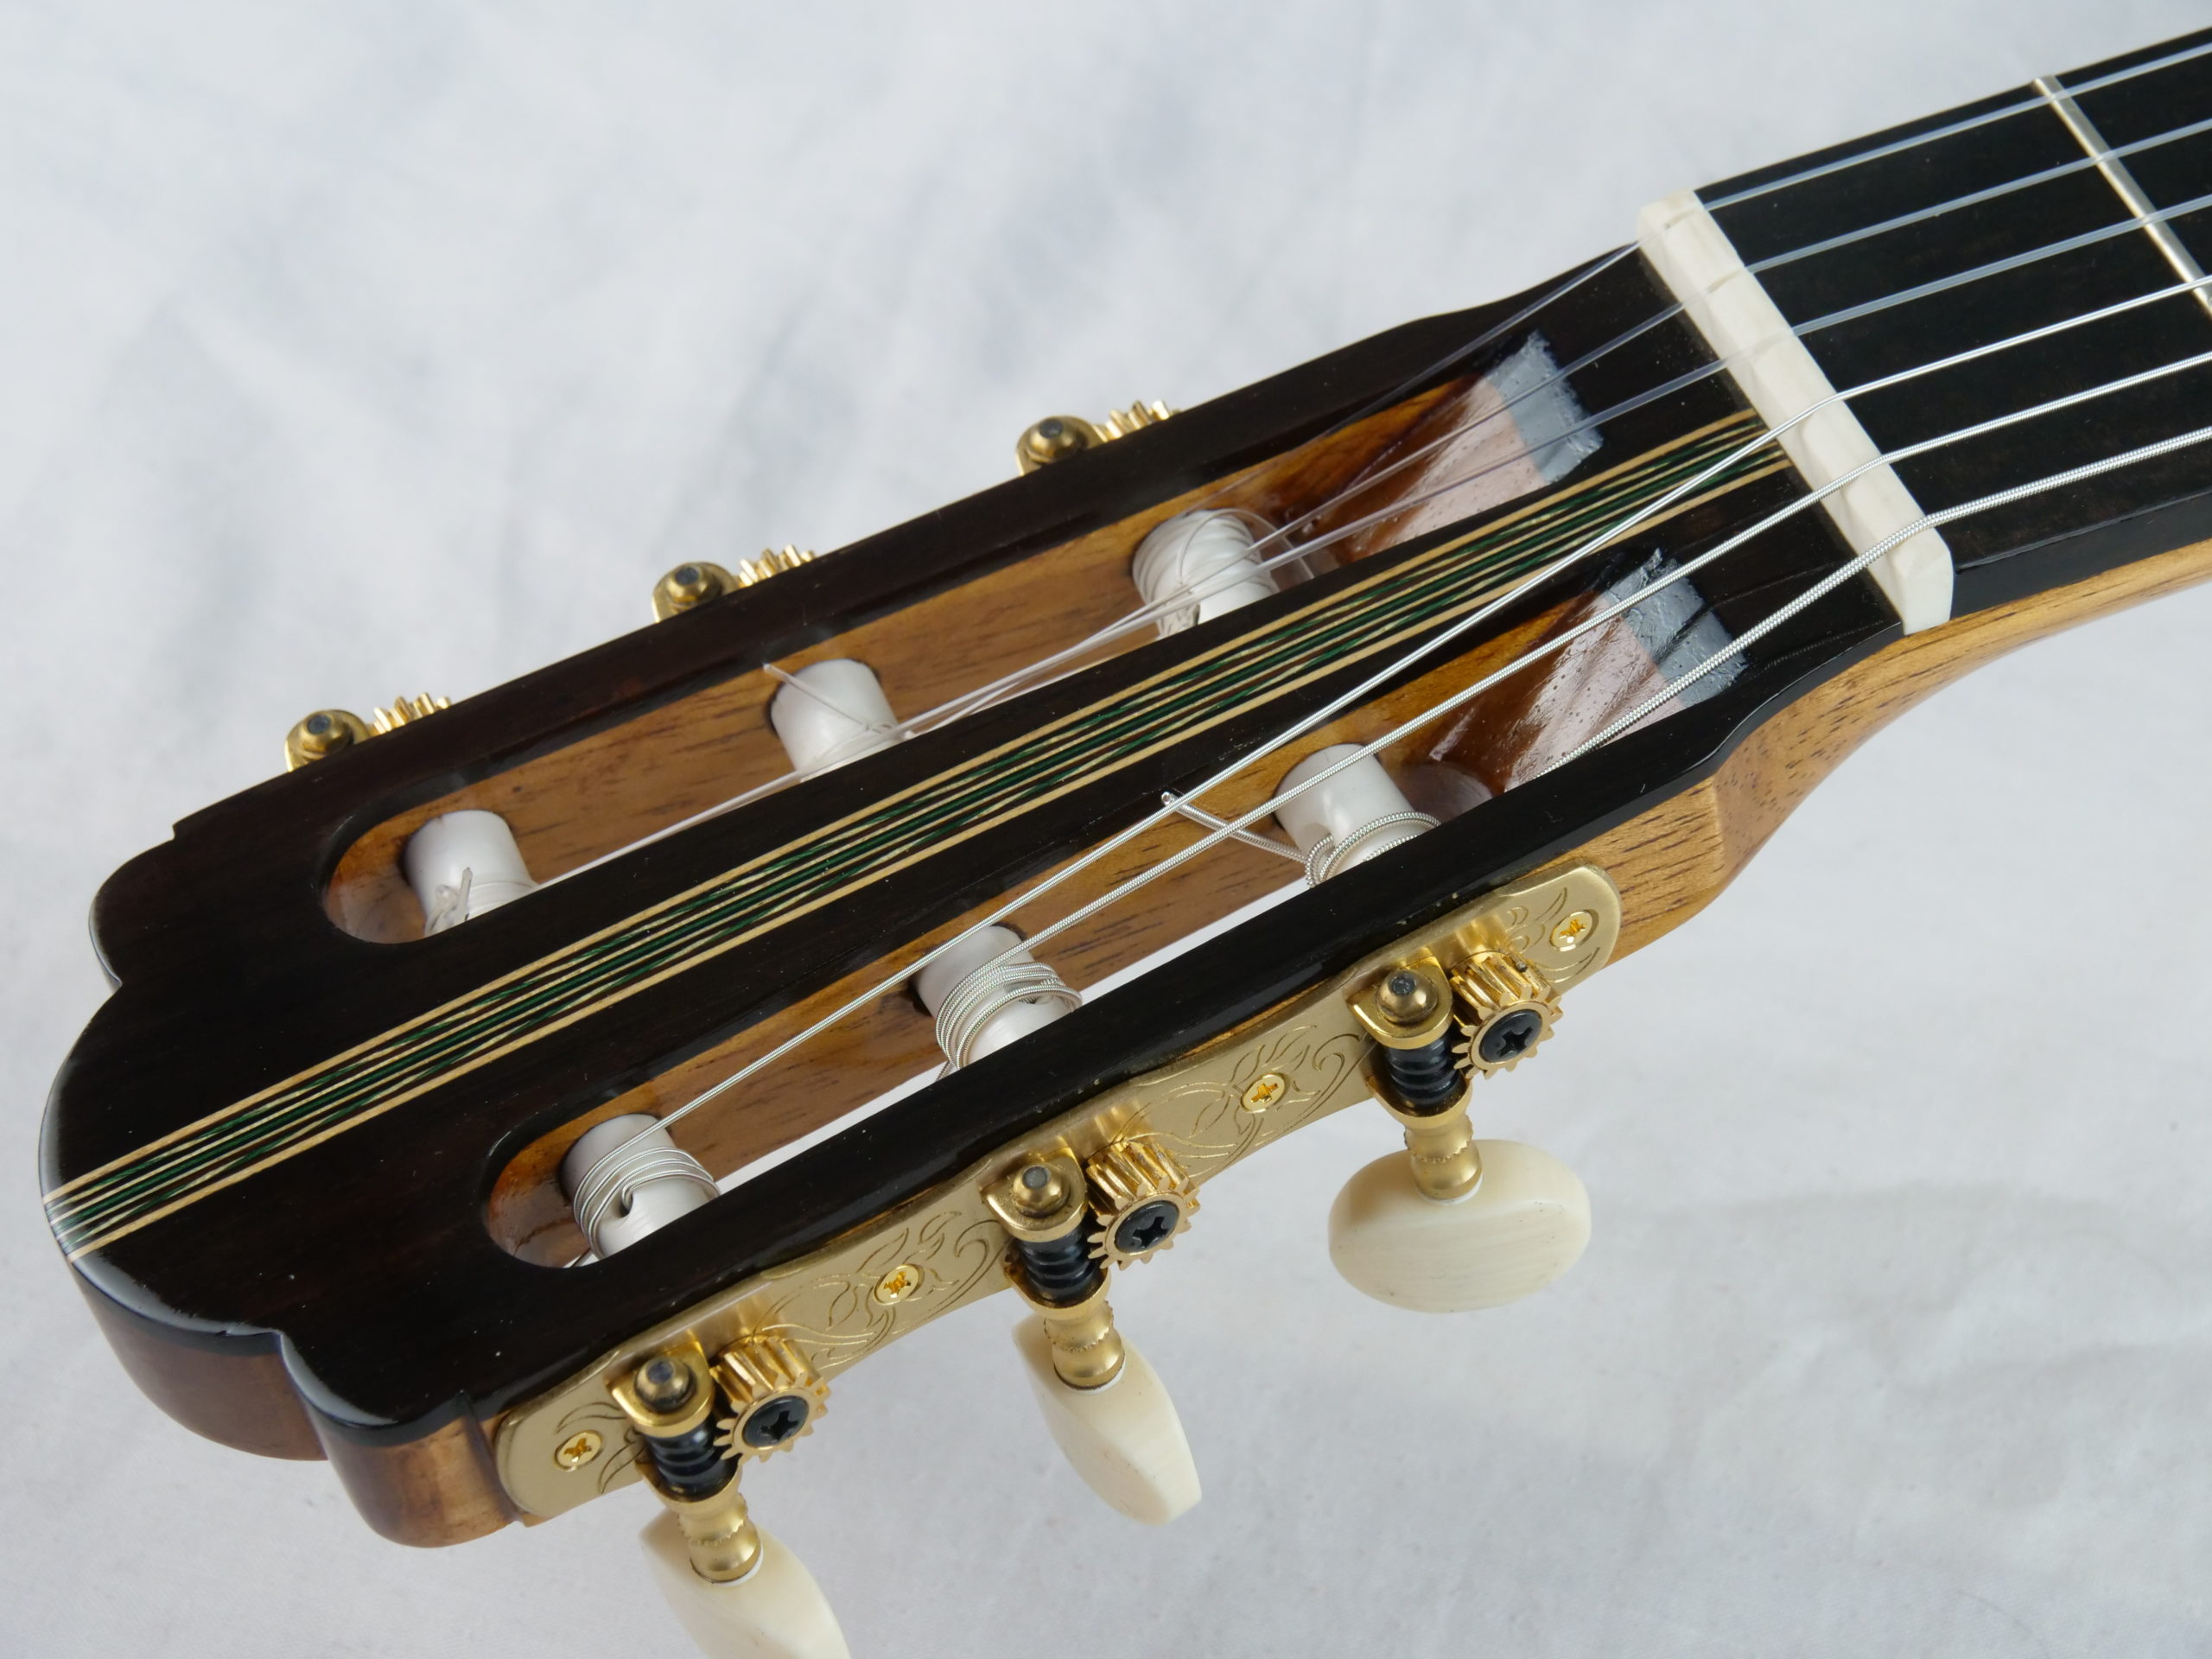 Valentim Carlos Gomes Modèle Hauser No 205 - 5900€ - Guitare classique  luthier